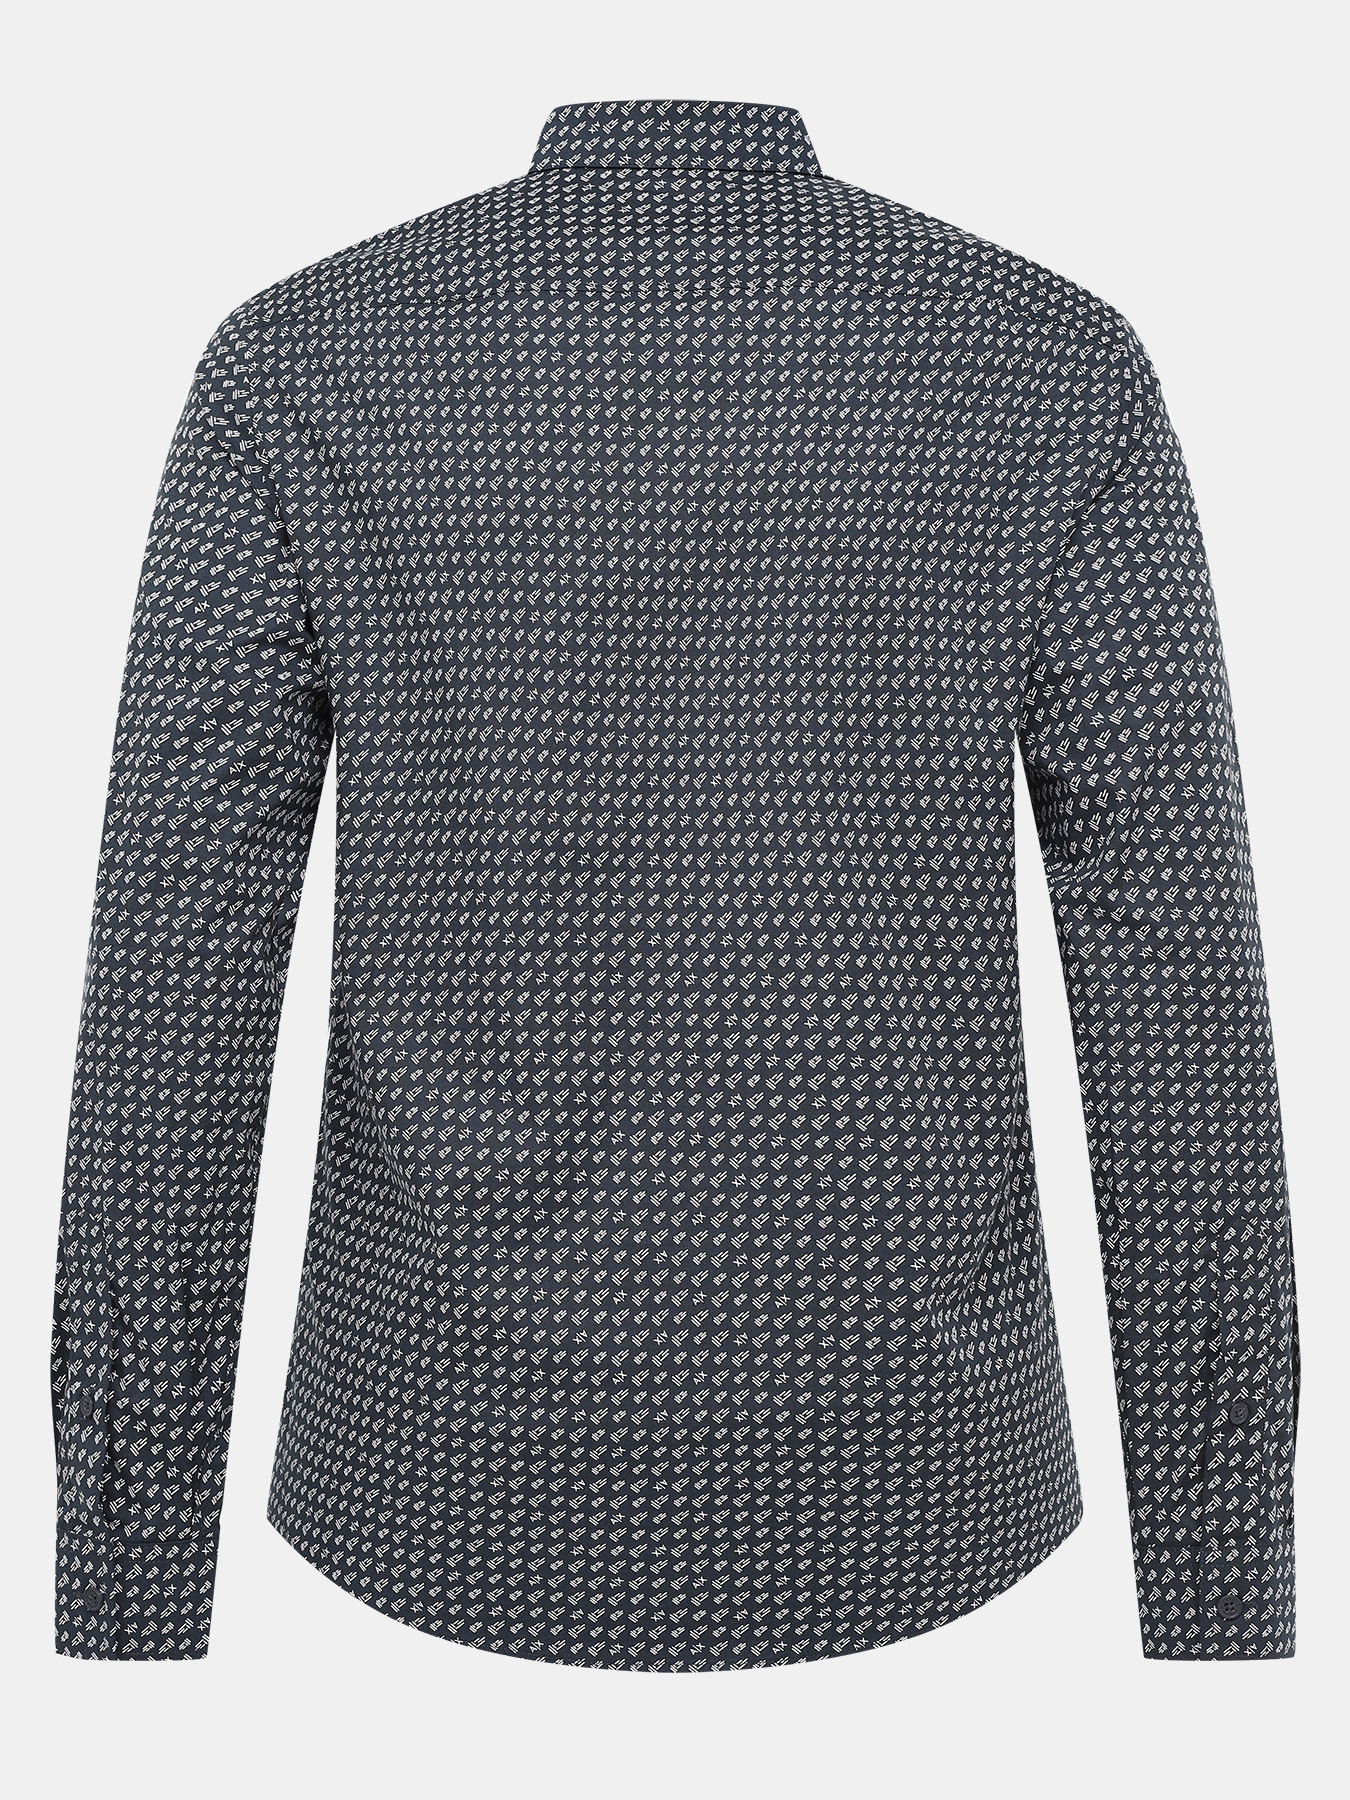 Рубашка Armani Exchange 422271-045, цвет темно-синий, размер 52-54 - фото 3